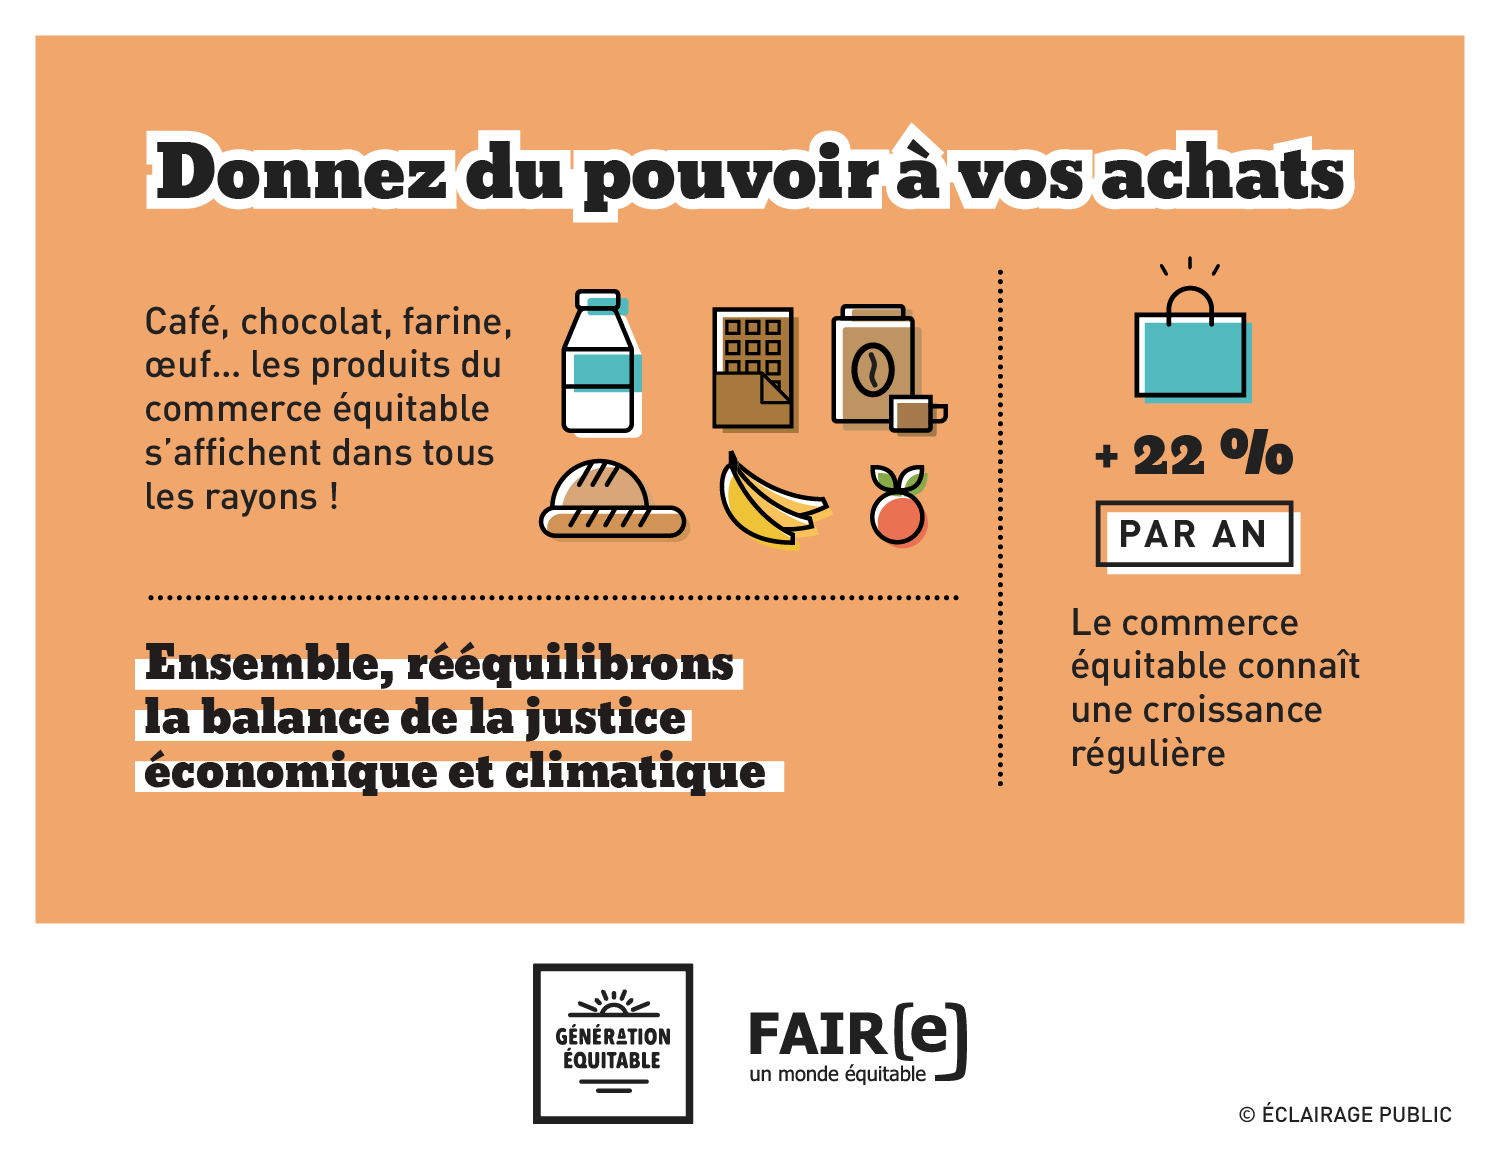 FAIRE-Commerce-equitable-Donnez-du-pouvoir-a-vos-achats-Infographie-ECLAIRAGE-PUBLIC-1500